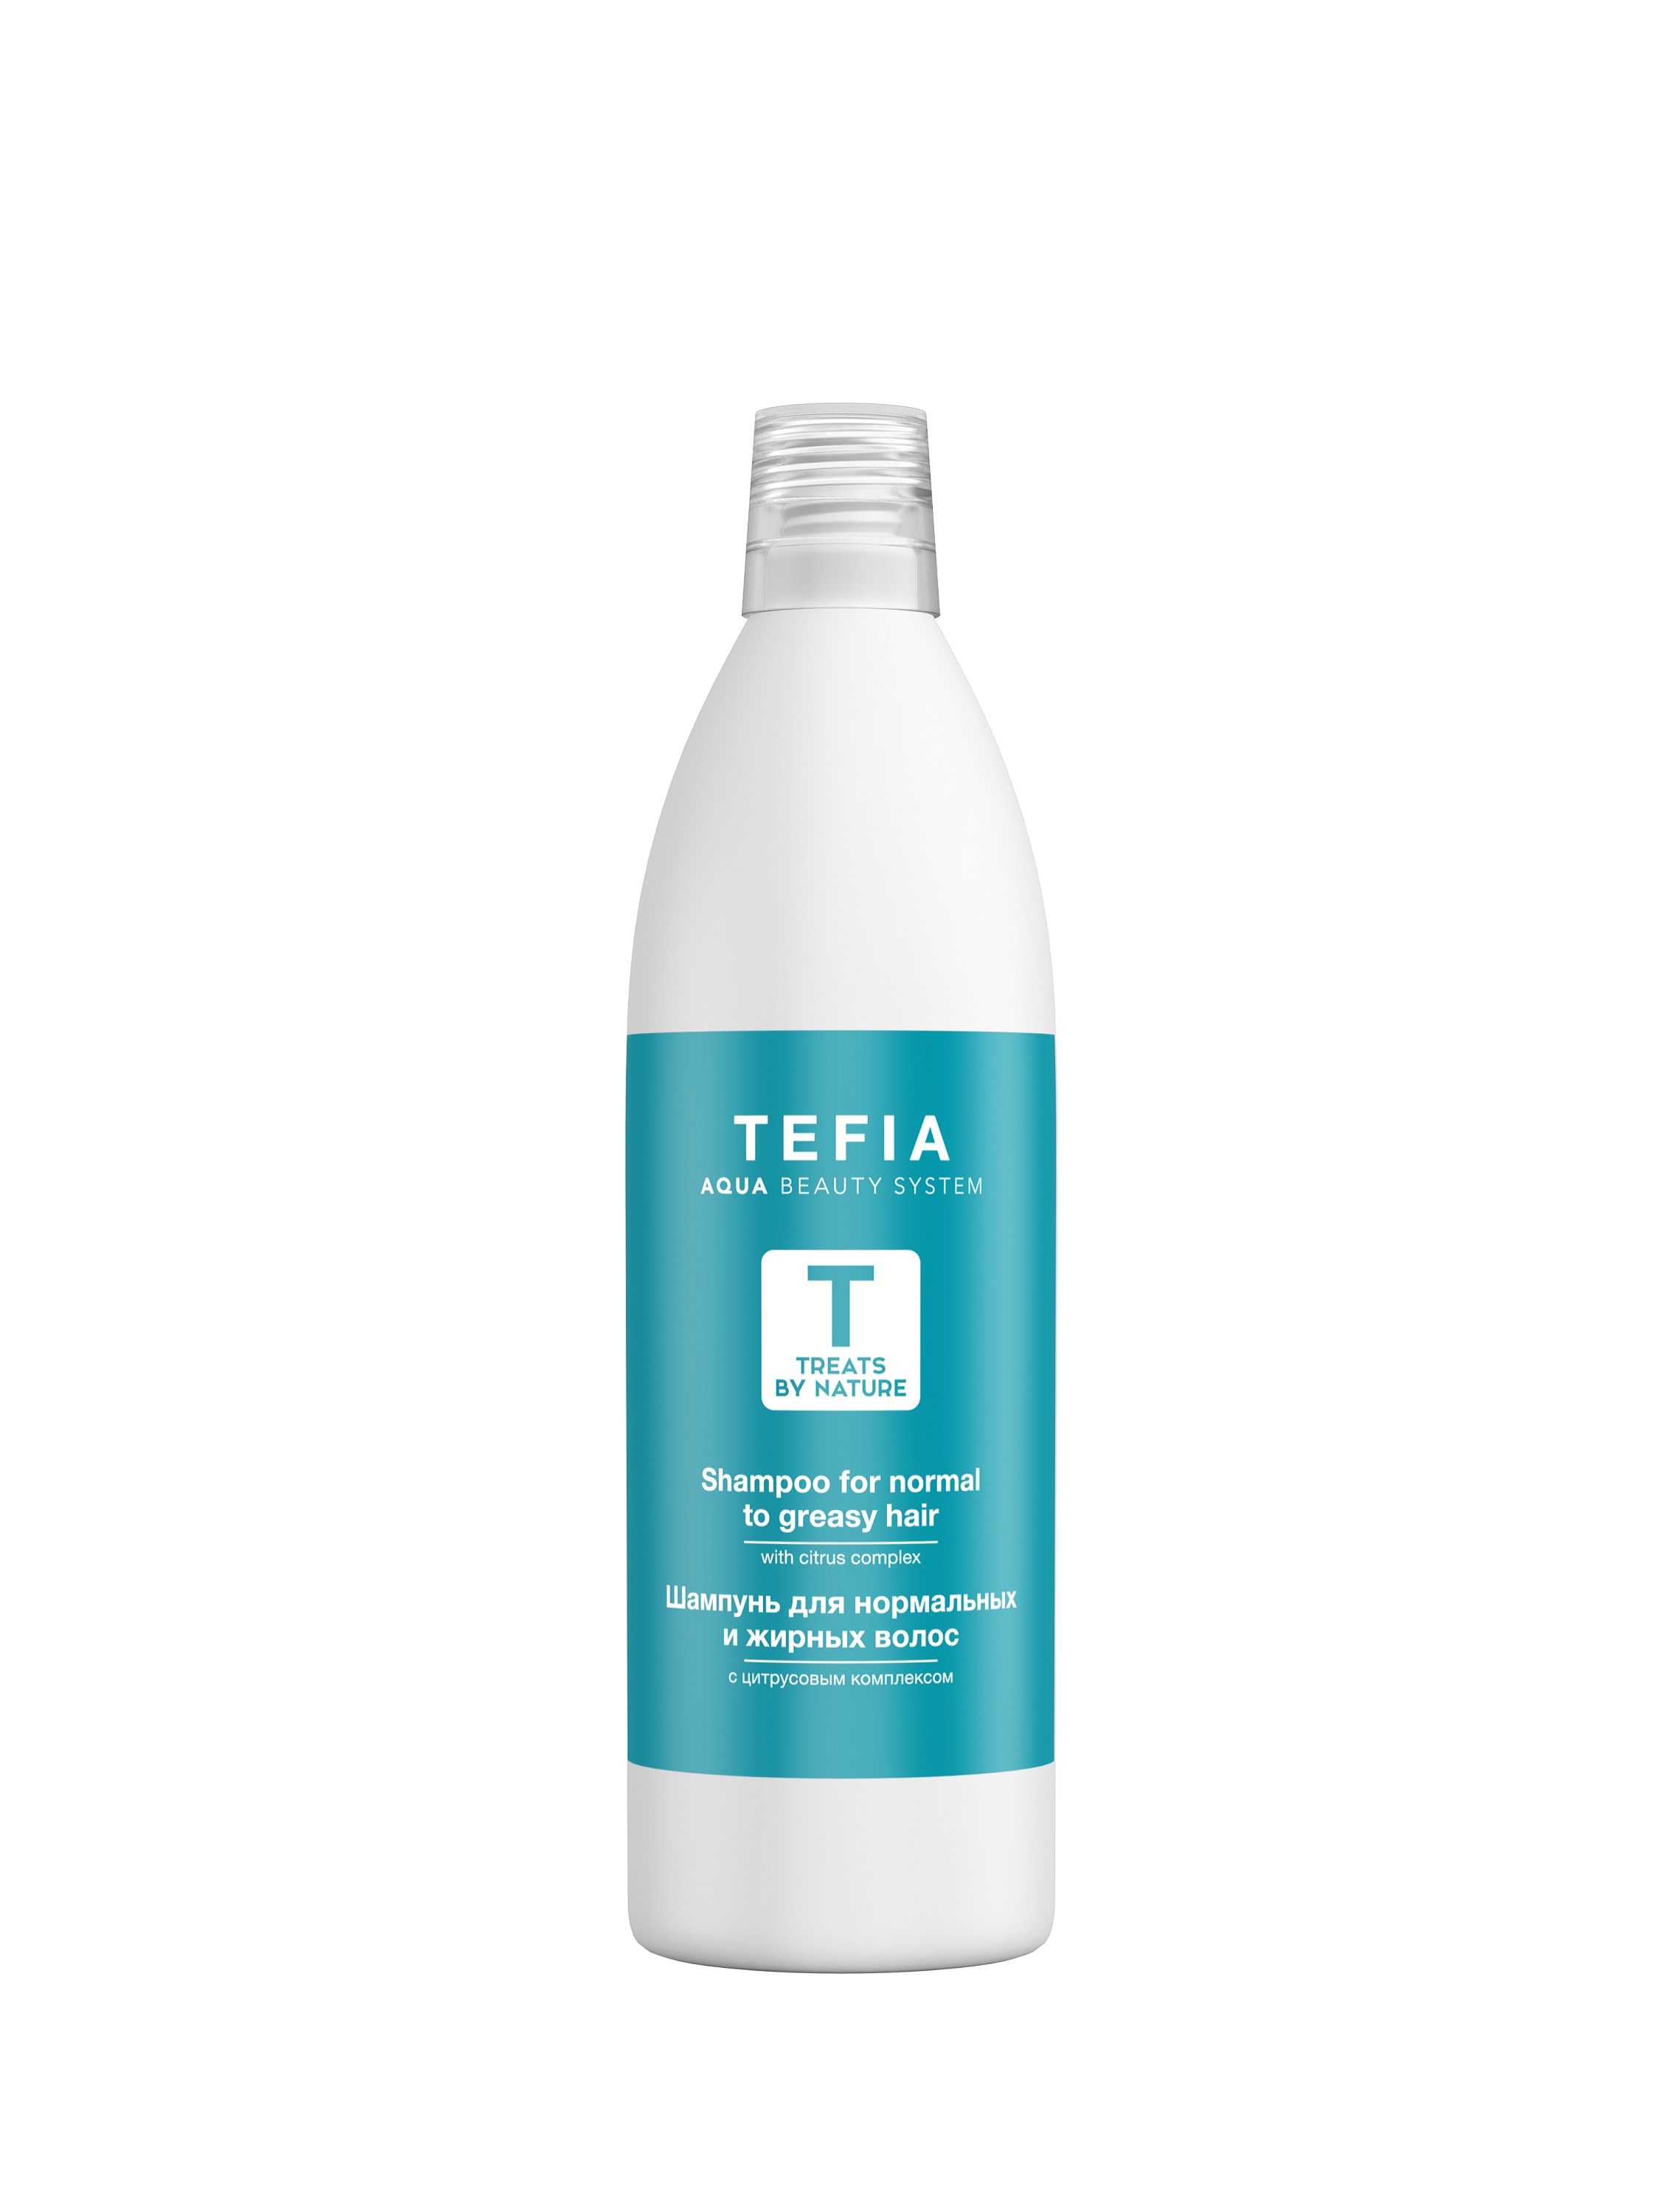 Шампунь TEFIA для нормальных и жирных волос, цитрусовый комплекс 1000мл, TREATS BY NATURE